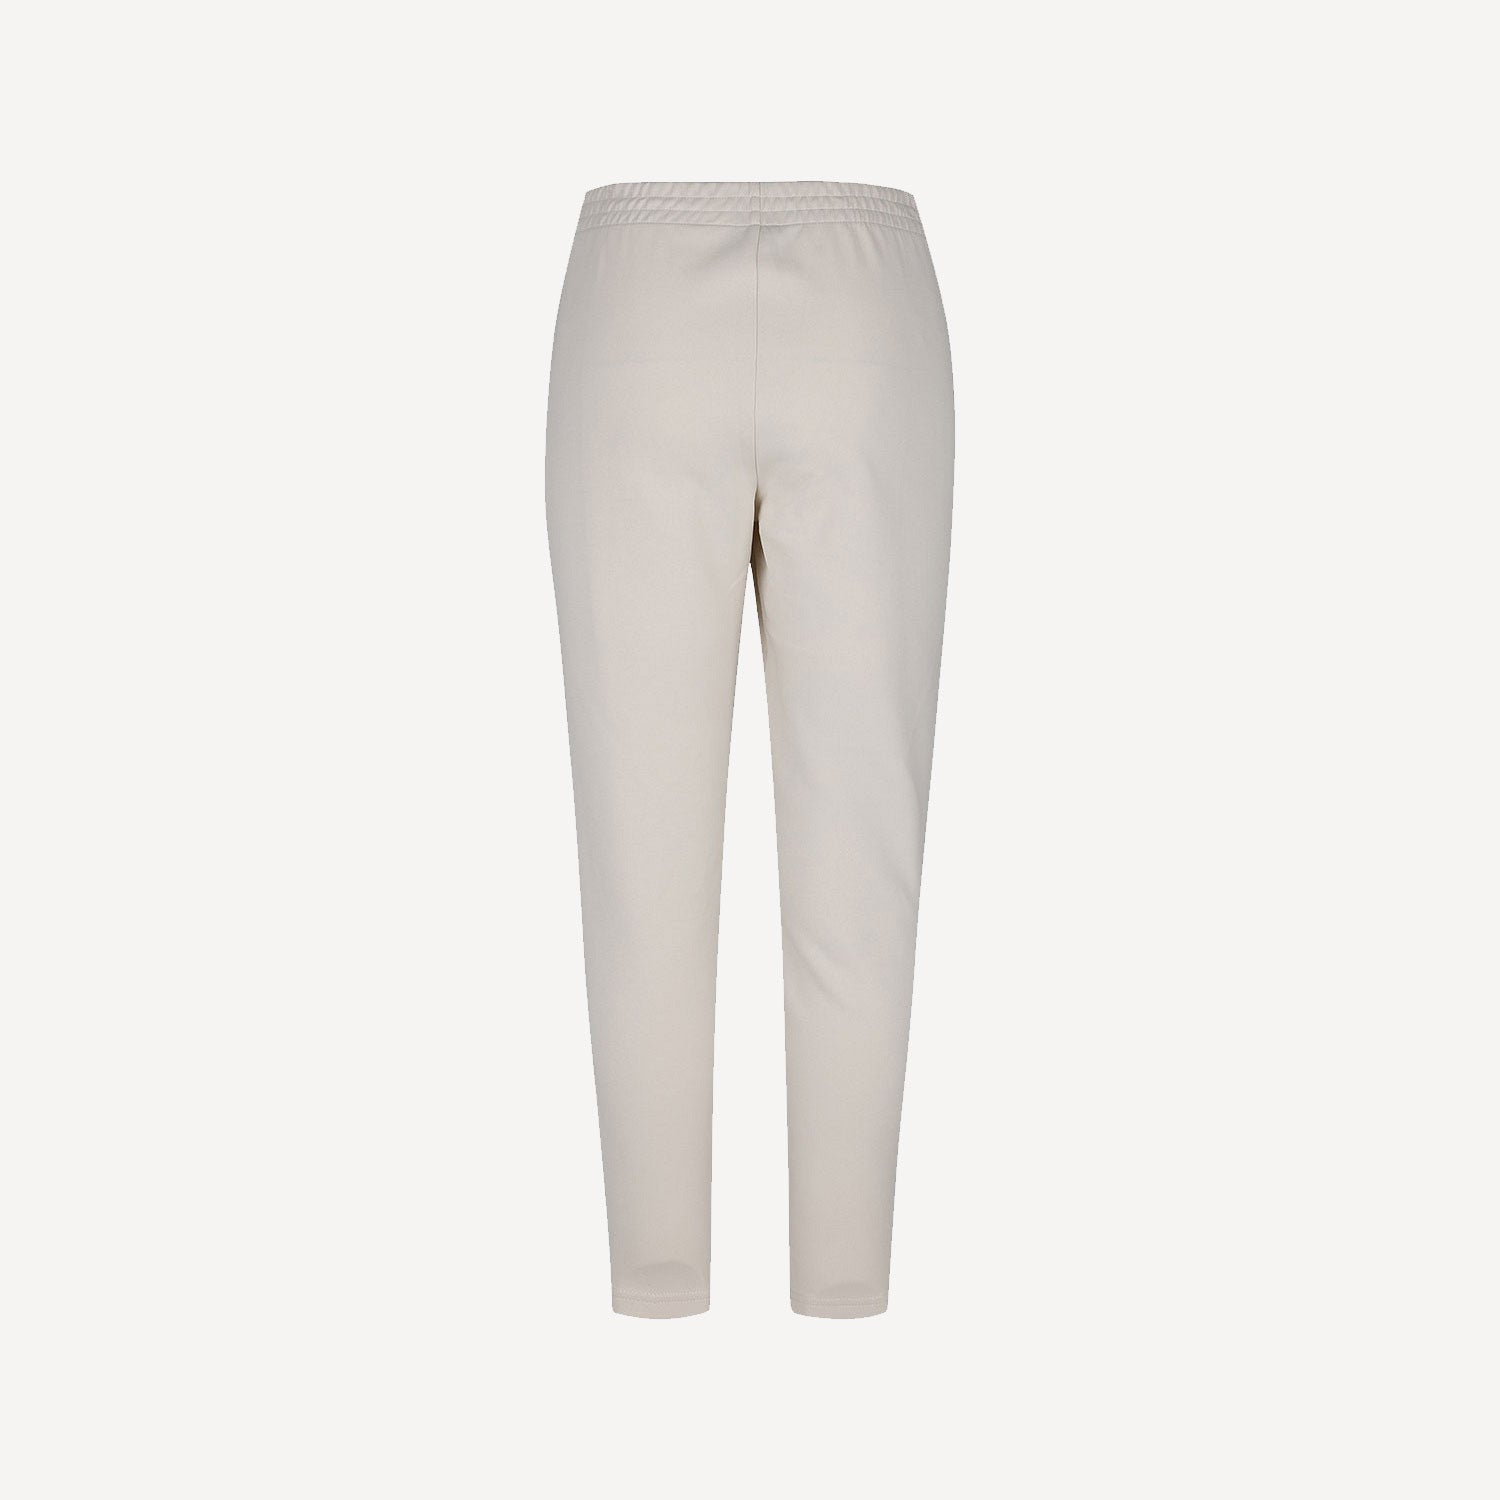 Robey Scuba Women's Cotton Pants - White (2)